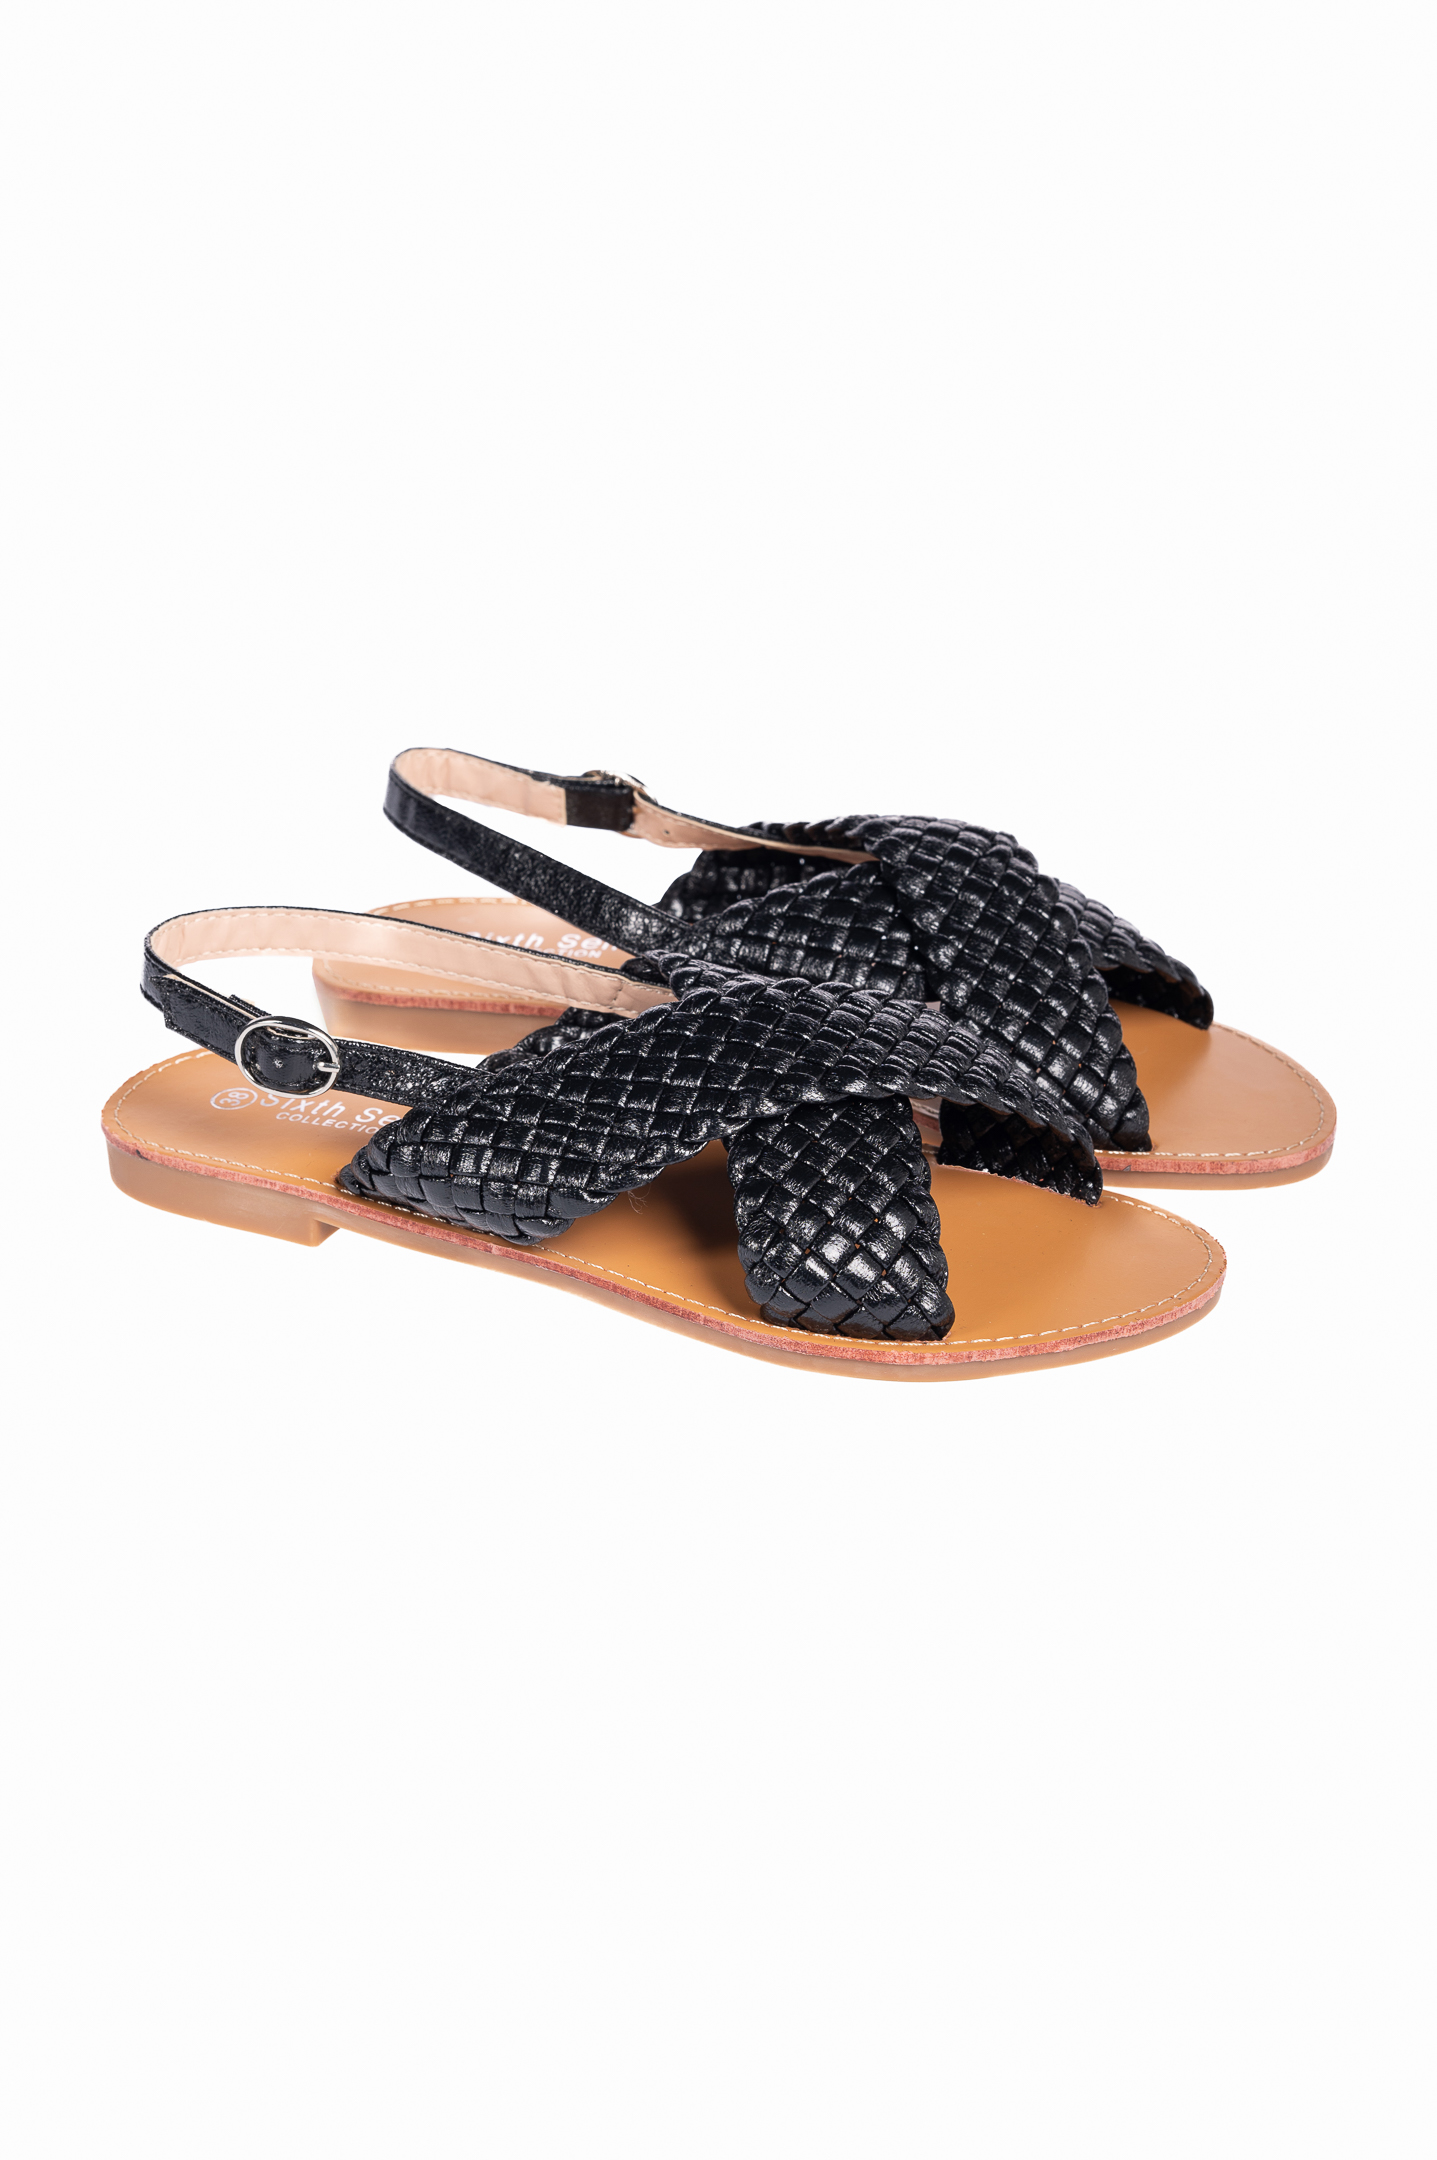 Παπούτσια > Σανδάλια Flat σανδάλια με πλεκτό σχέδιο - Μαύρο